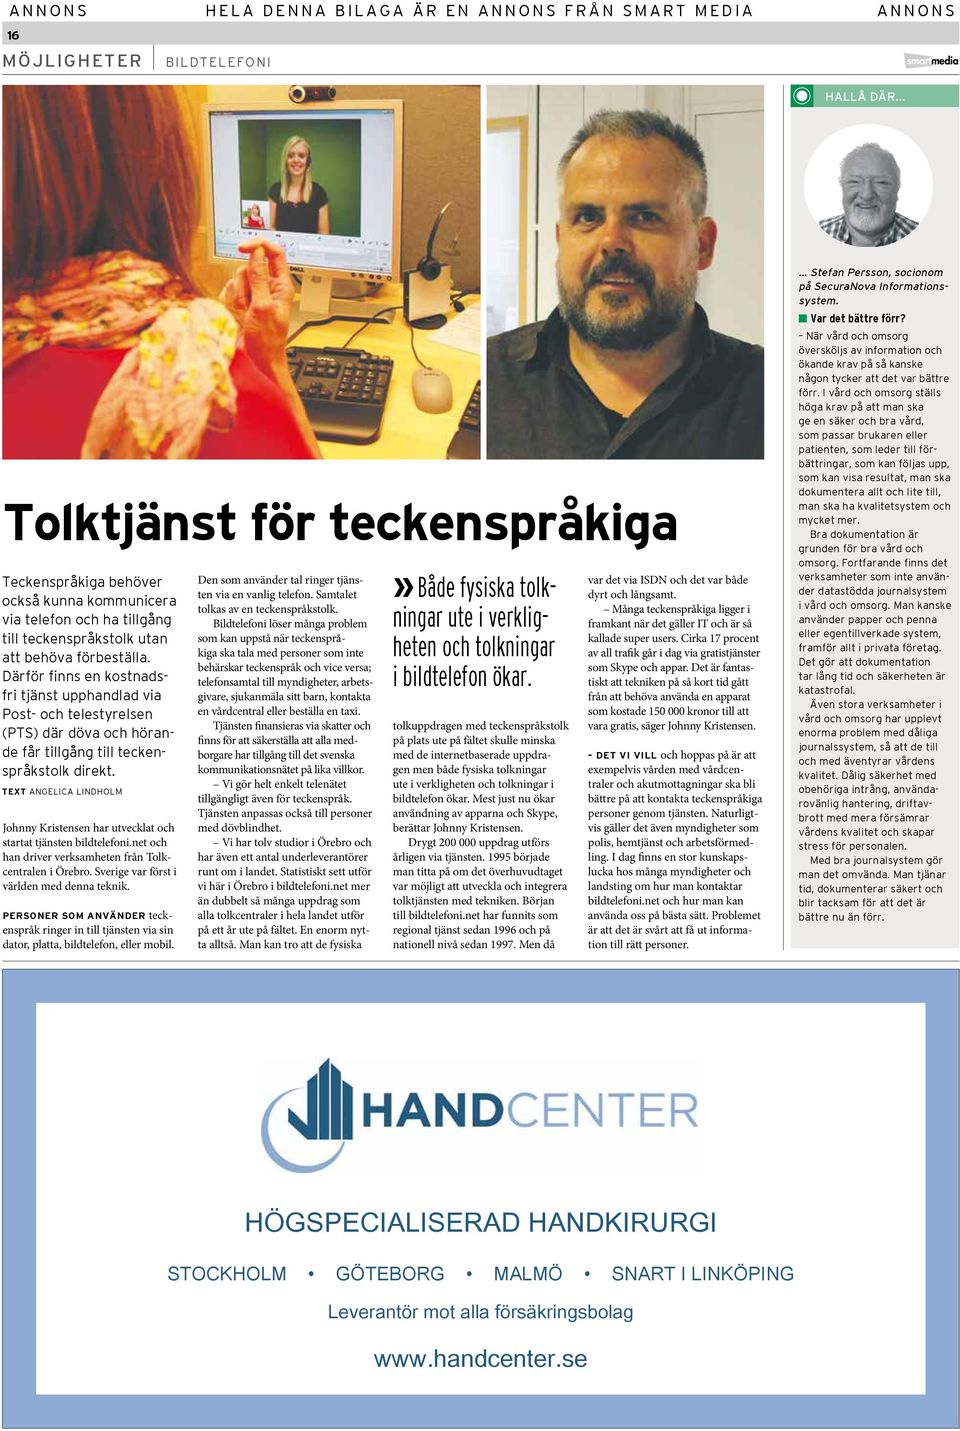 TEXT ANGELICA LINDHOLM Johnny Kristensen har utvecklat och startat tjänsten bildtelefoni.net och han driver verksamheten från Tolkcentralen i Örebro. Sverige var först i världen med denna teknik.